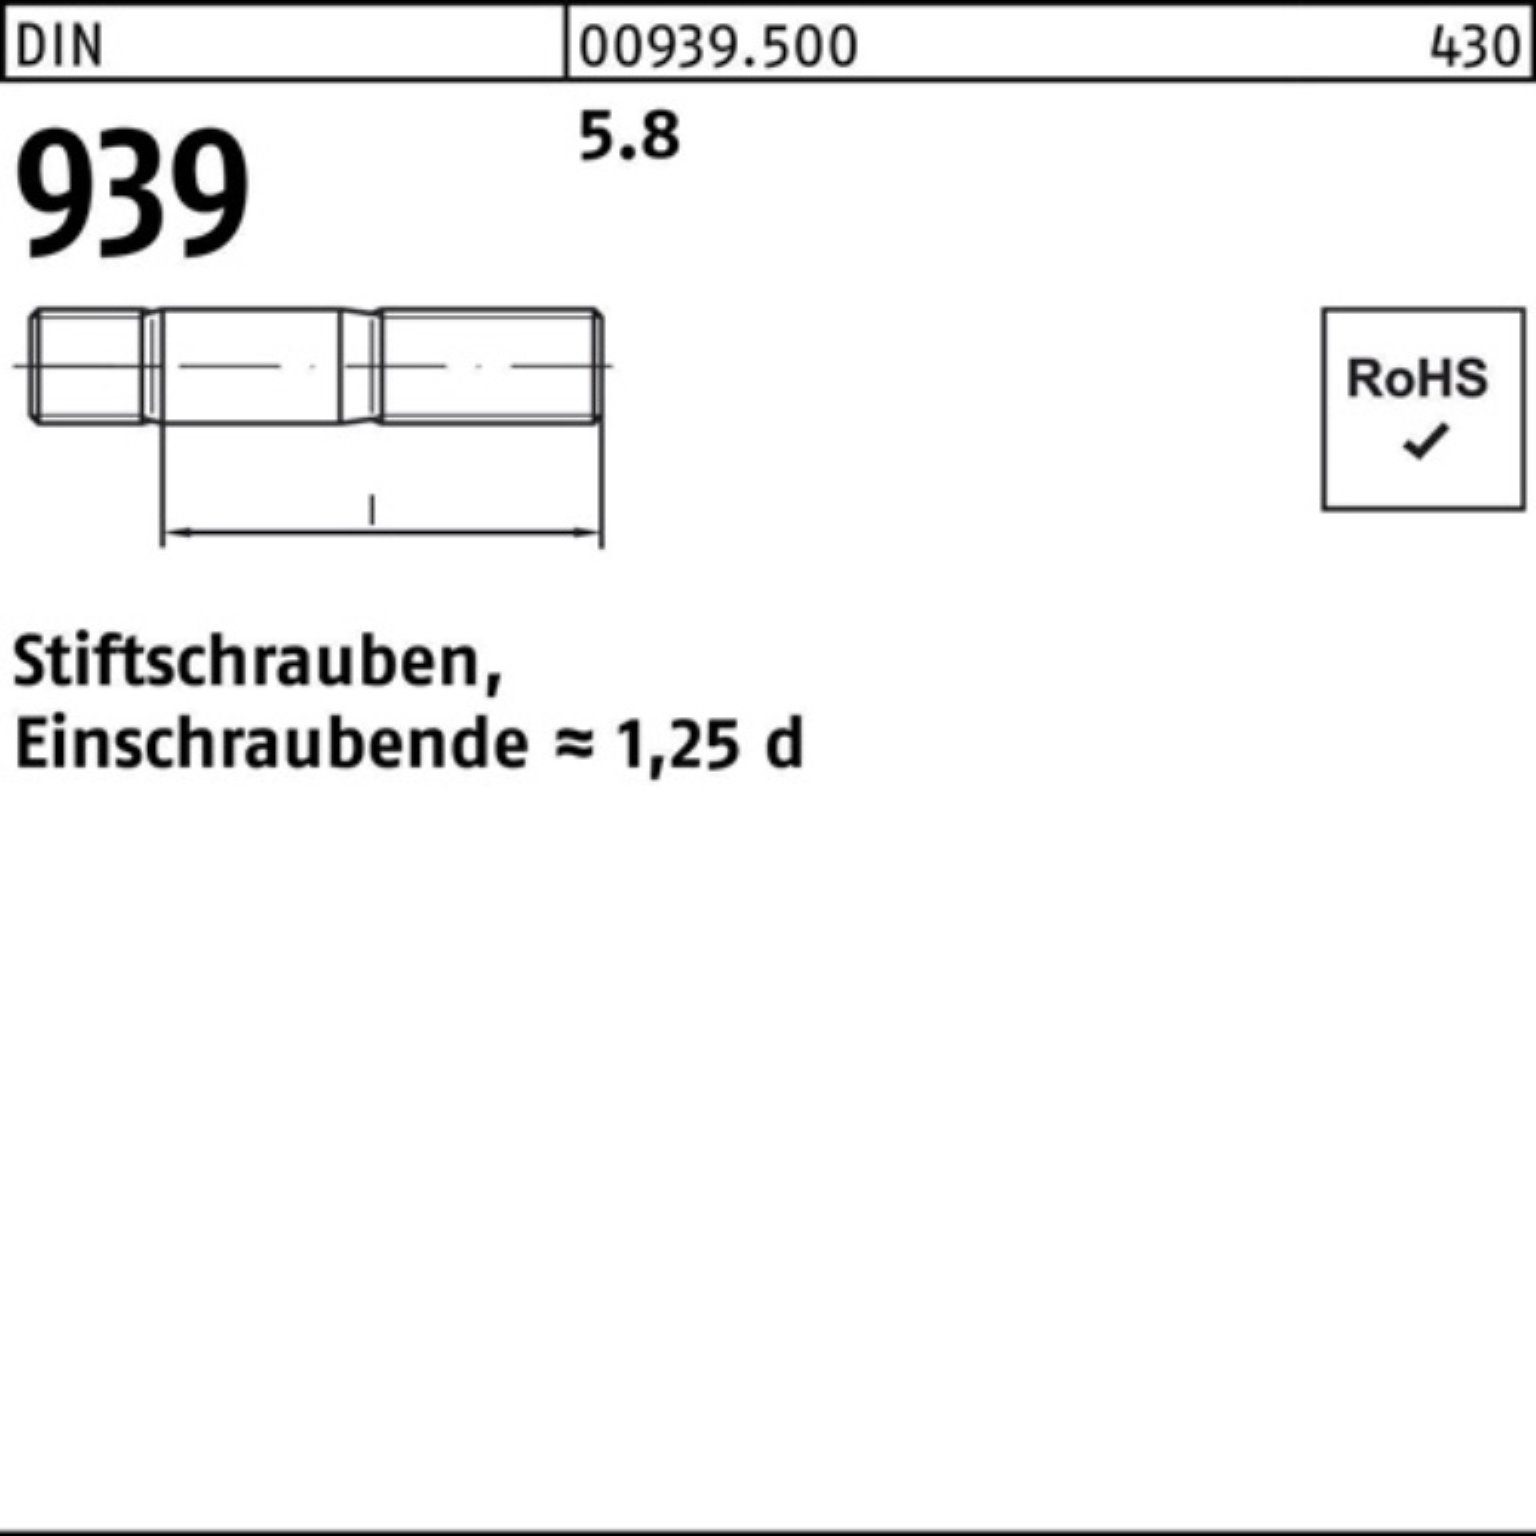 1 DIN St M30x 100er Pack Stiftschraube 939 90 Einschraubende=1,25d 5.8 Stiftschraube Reyher